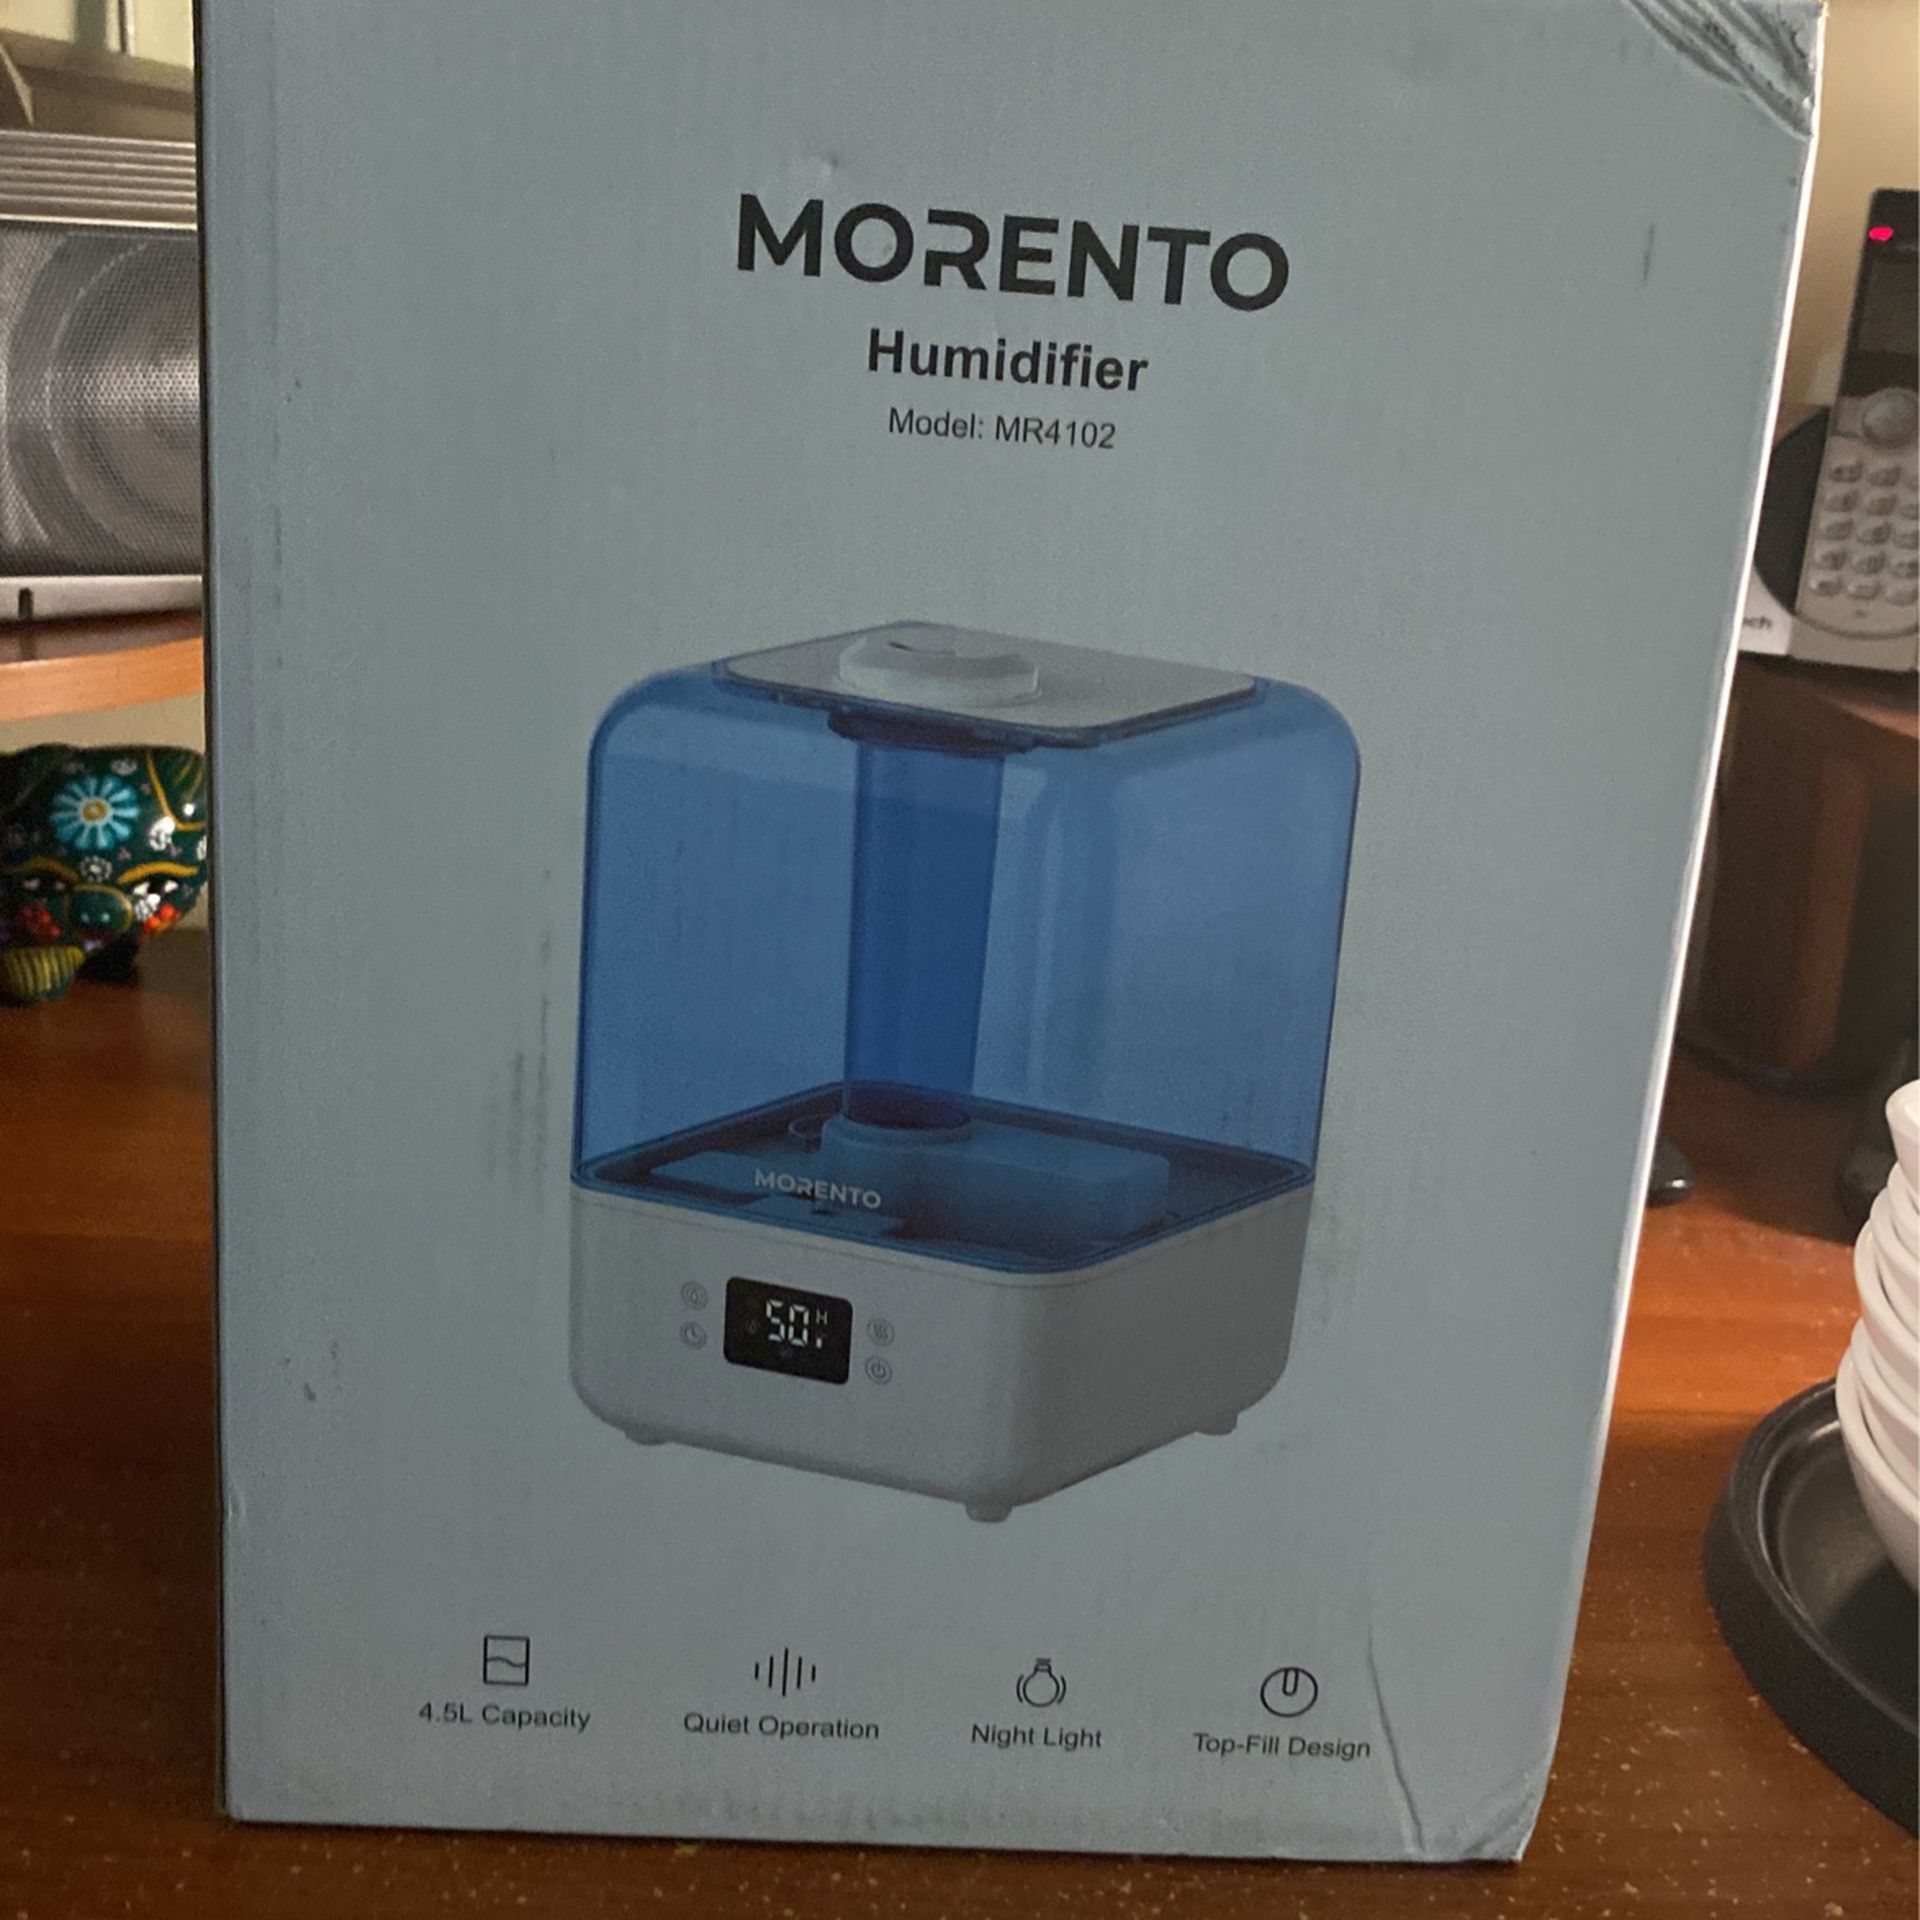 Morento Humidifier